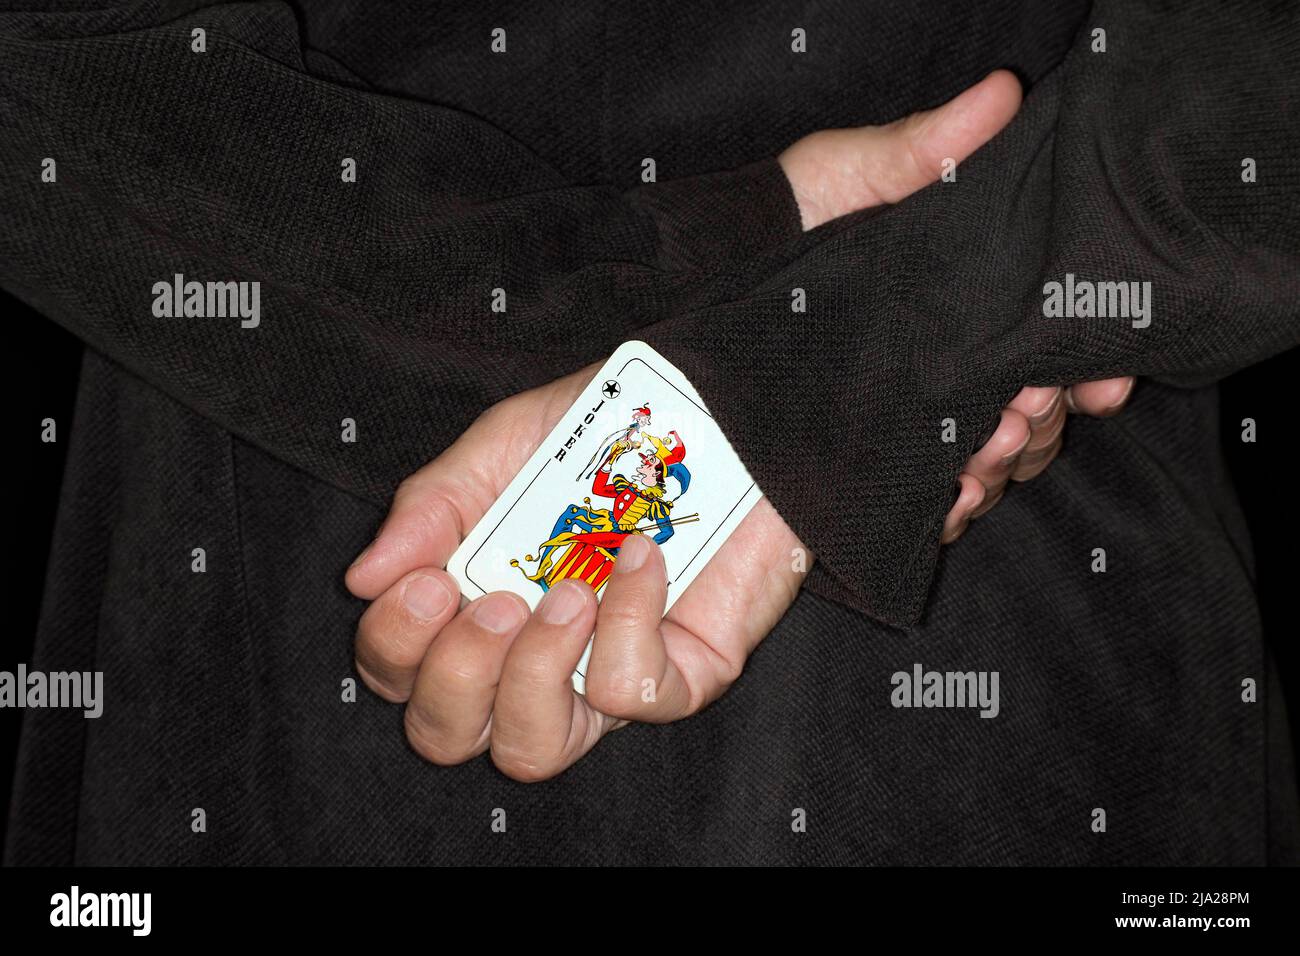 Spielkarte, Betrug, Symbol-Betrug, Symbol-Bild für einen weiteren Joker auf dem Ärmel Stockfoto